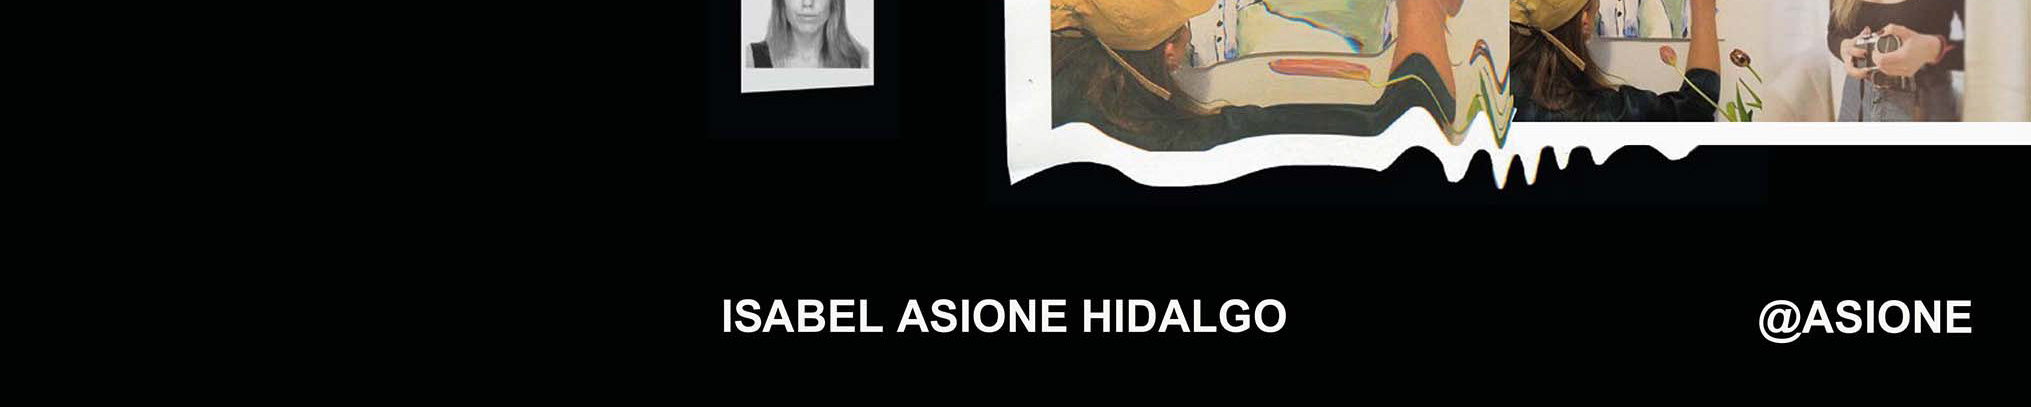 Bannière de profil de Isabel asione Hidalgo